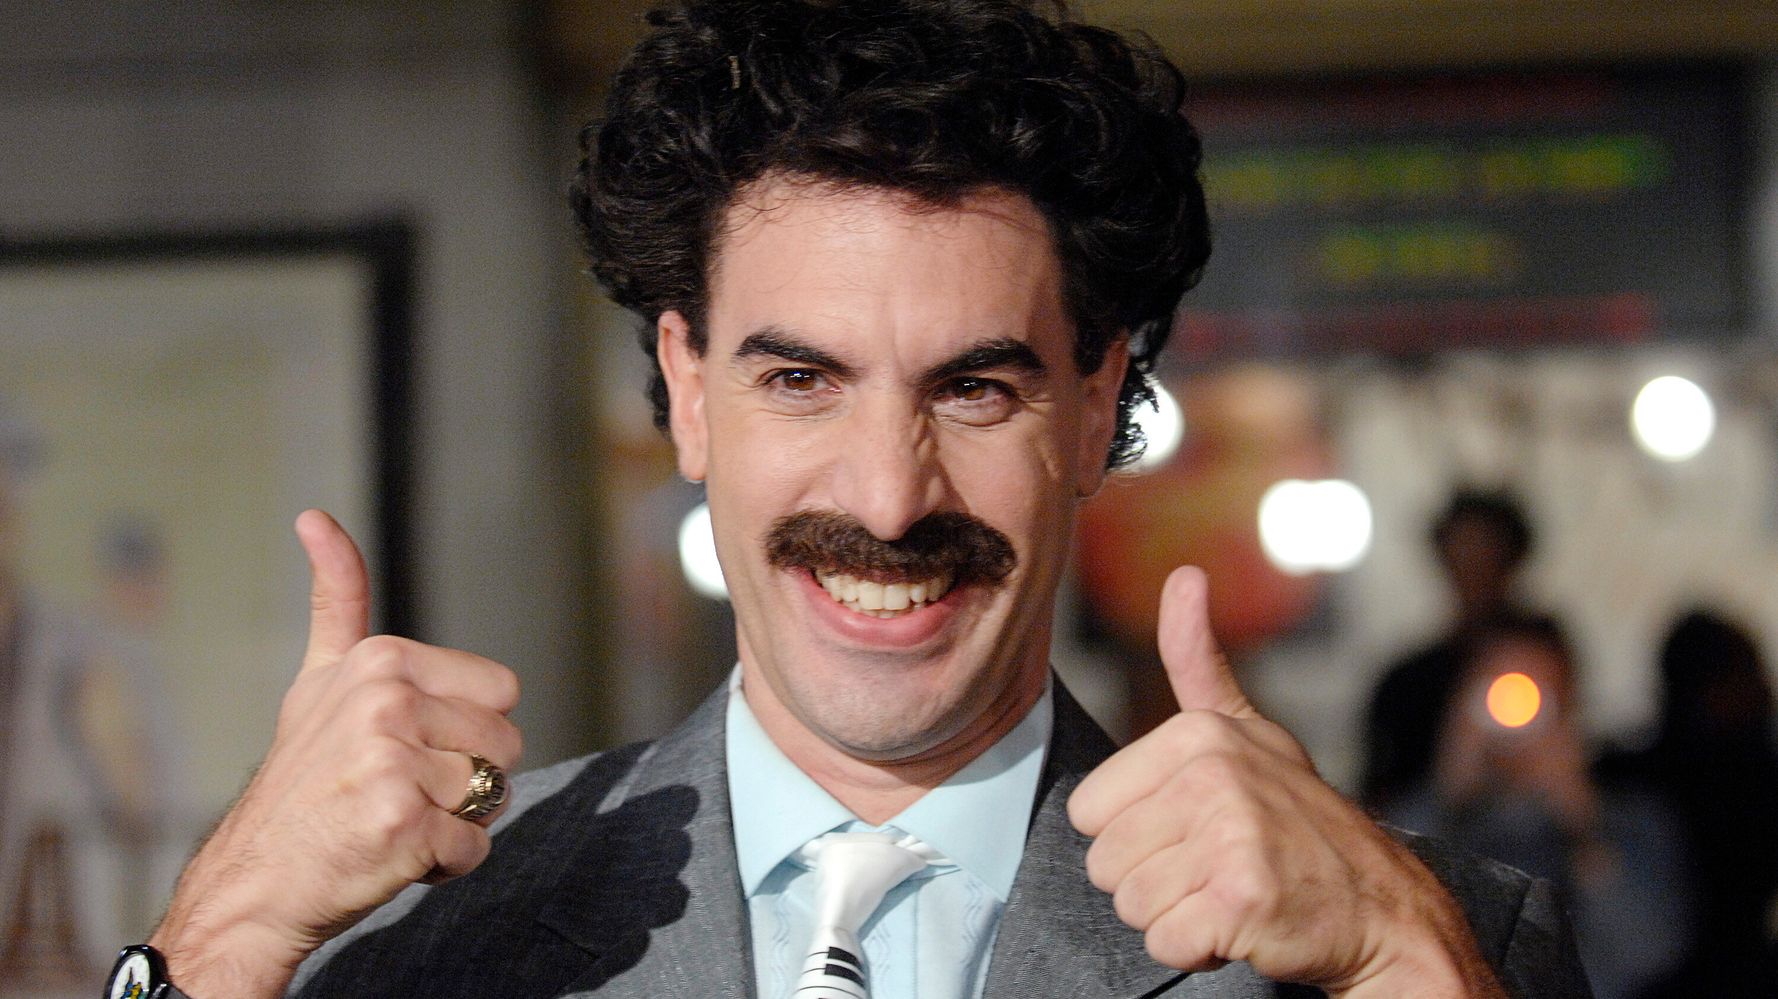 Kazhakstan Adopts Borat’s Catchphrase As New Tourism Slogan